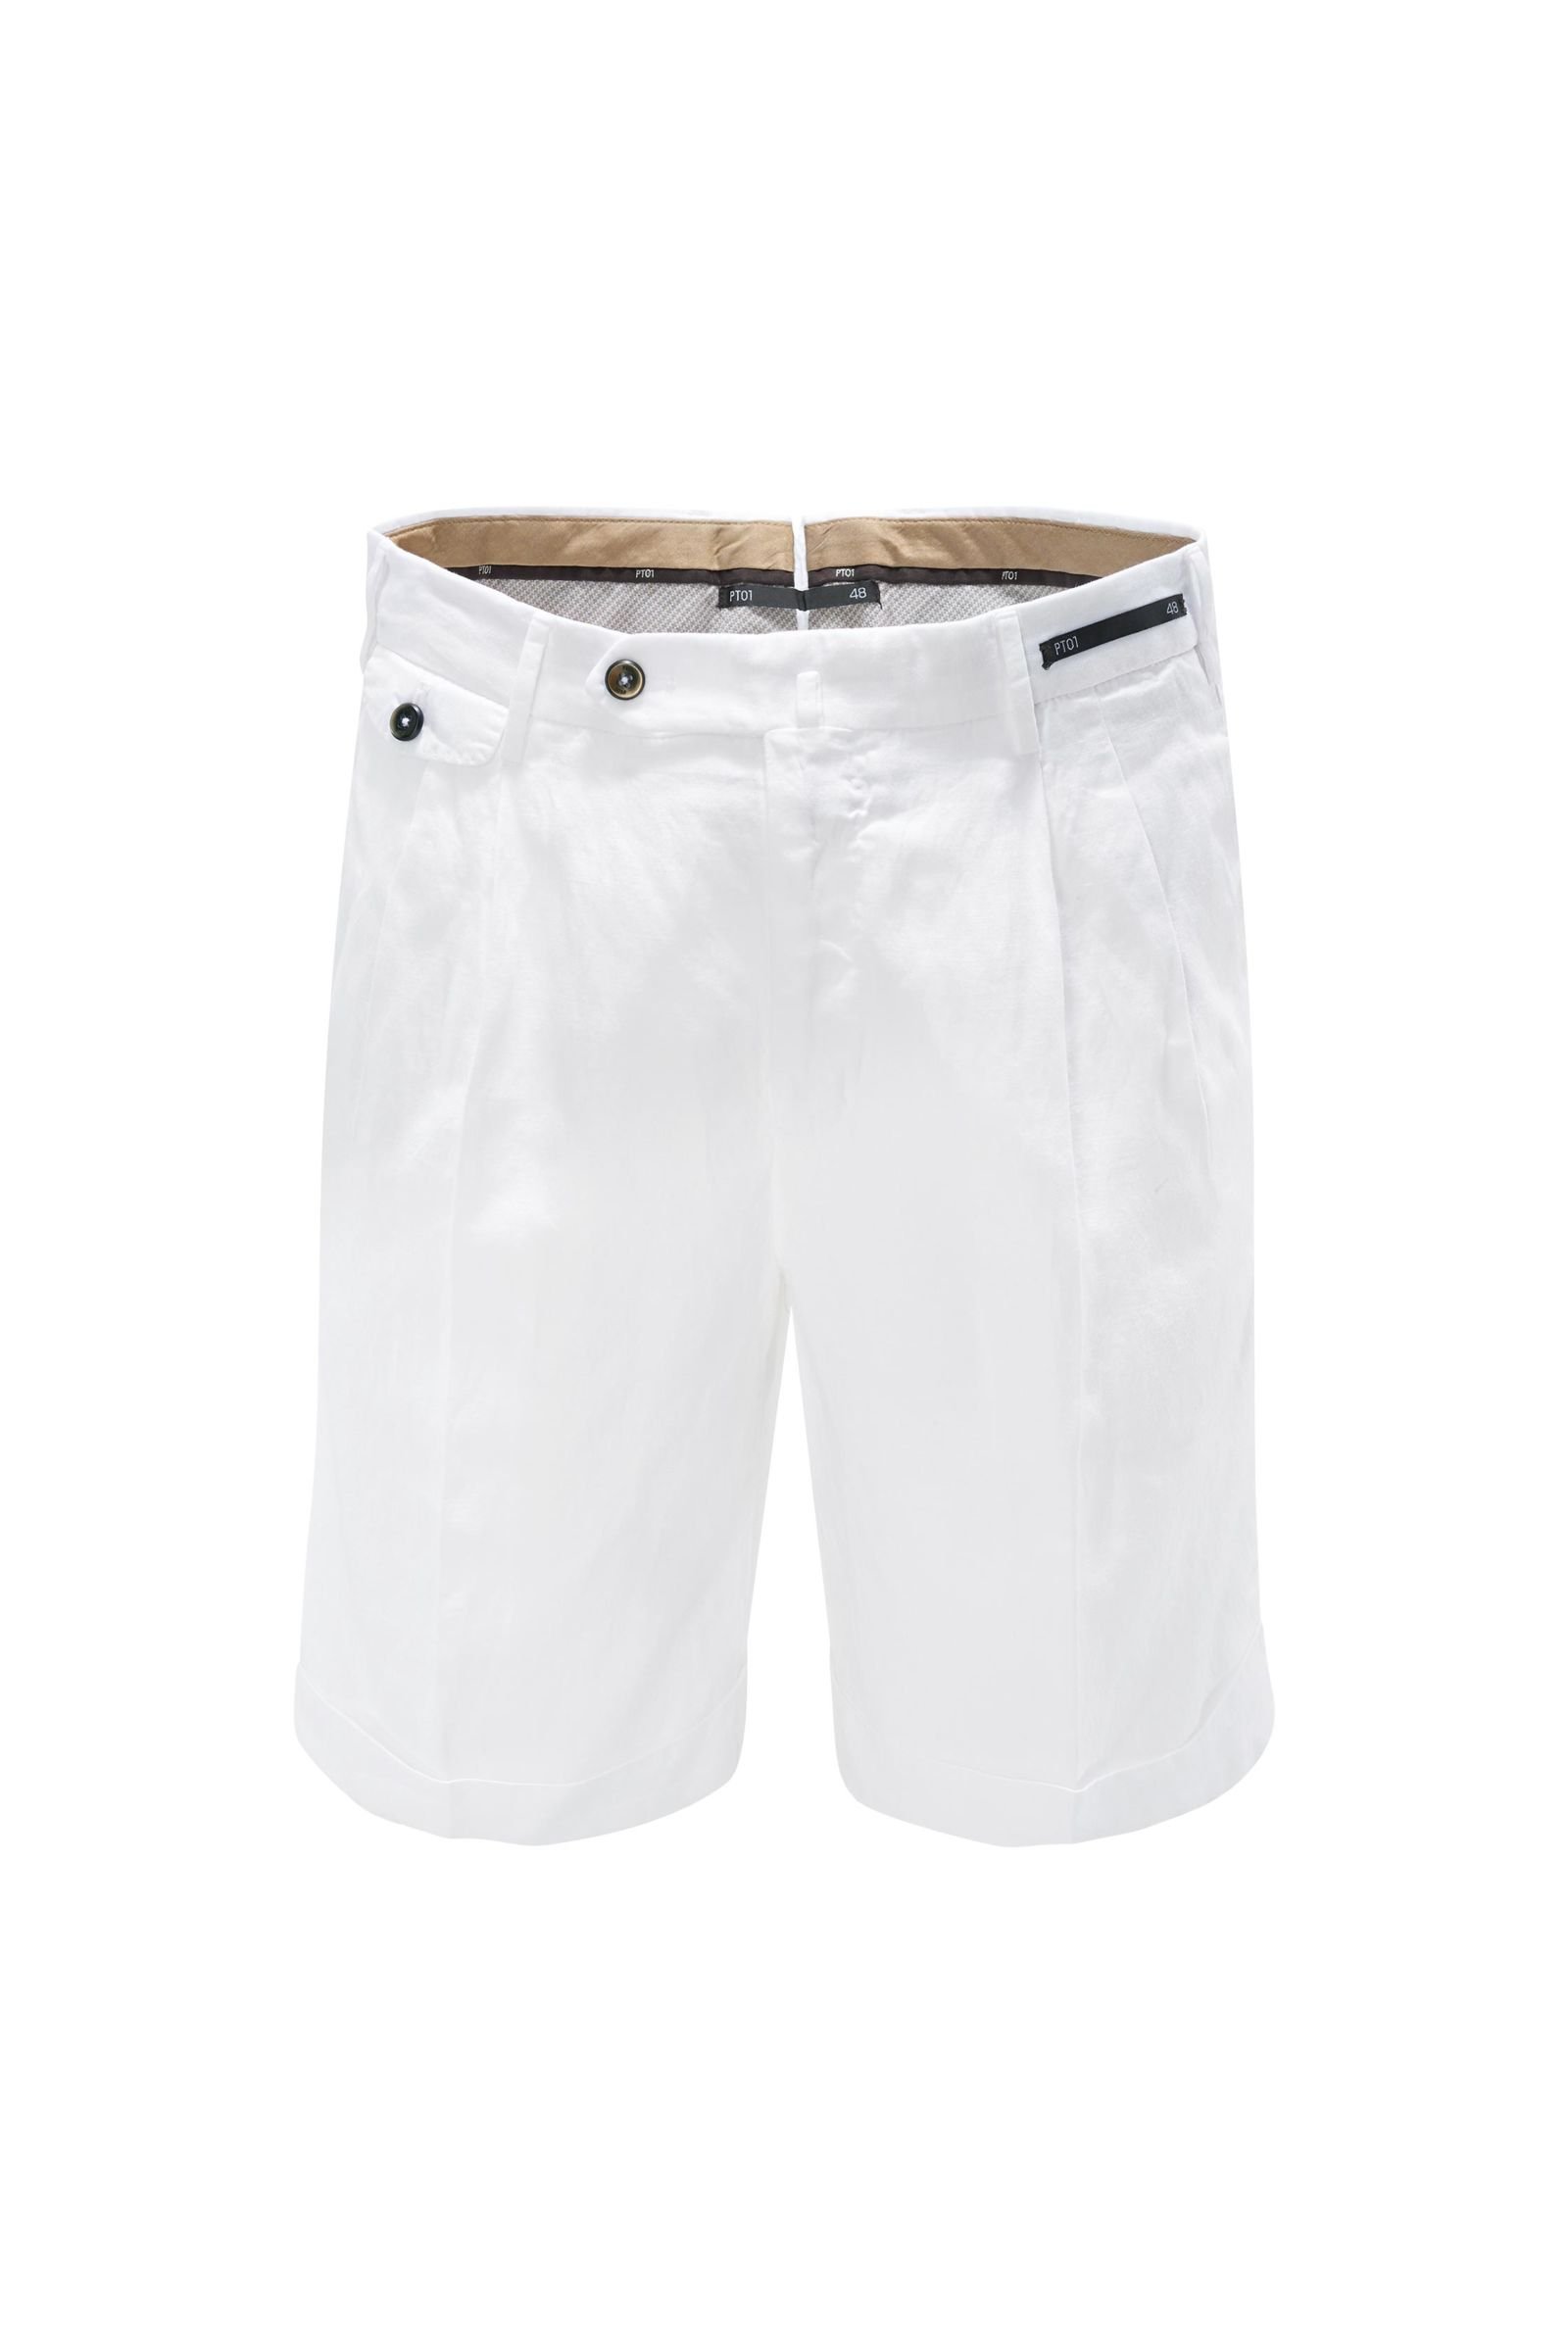 Shorts white